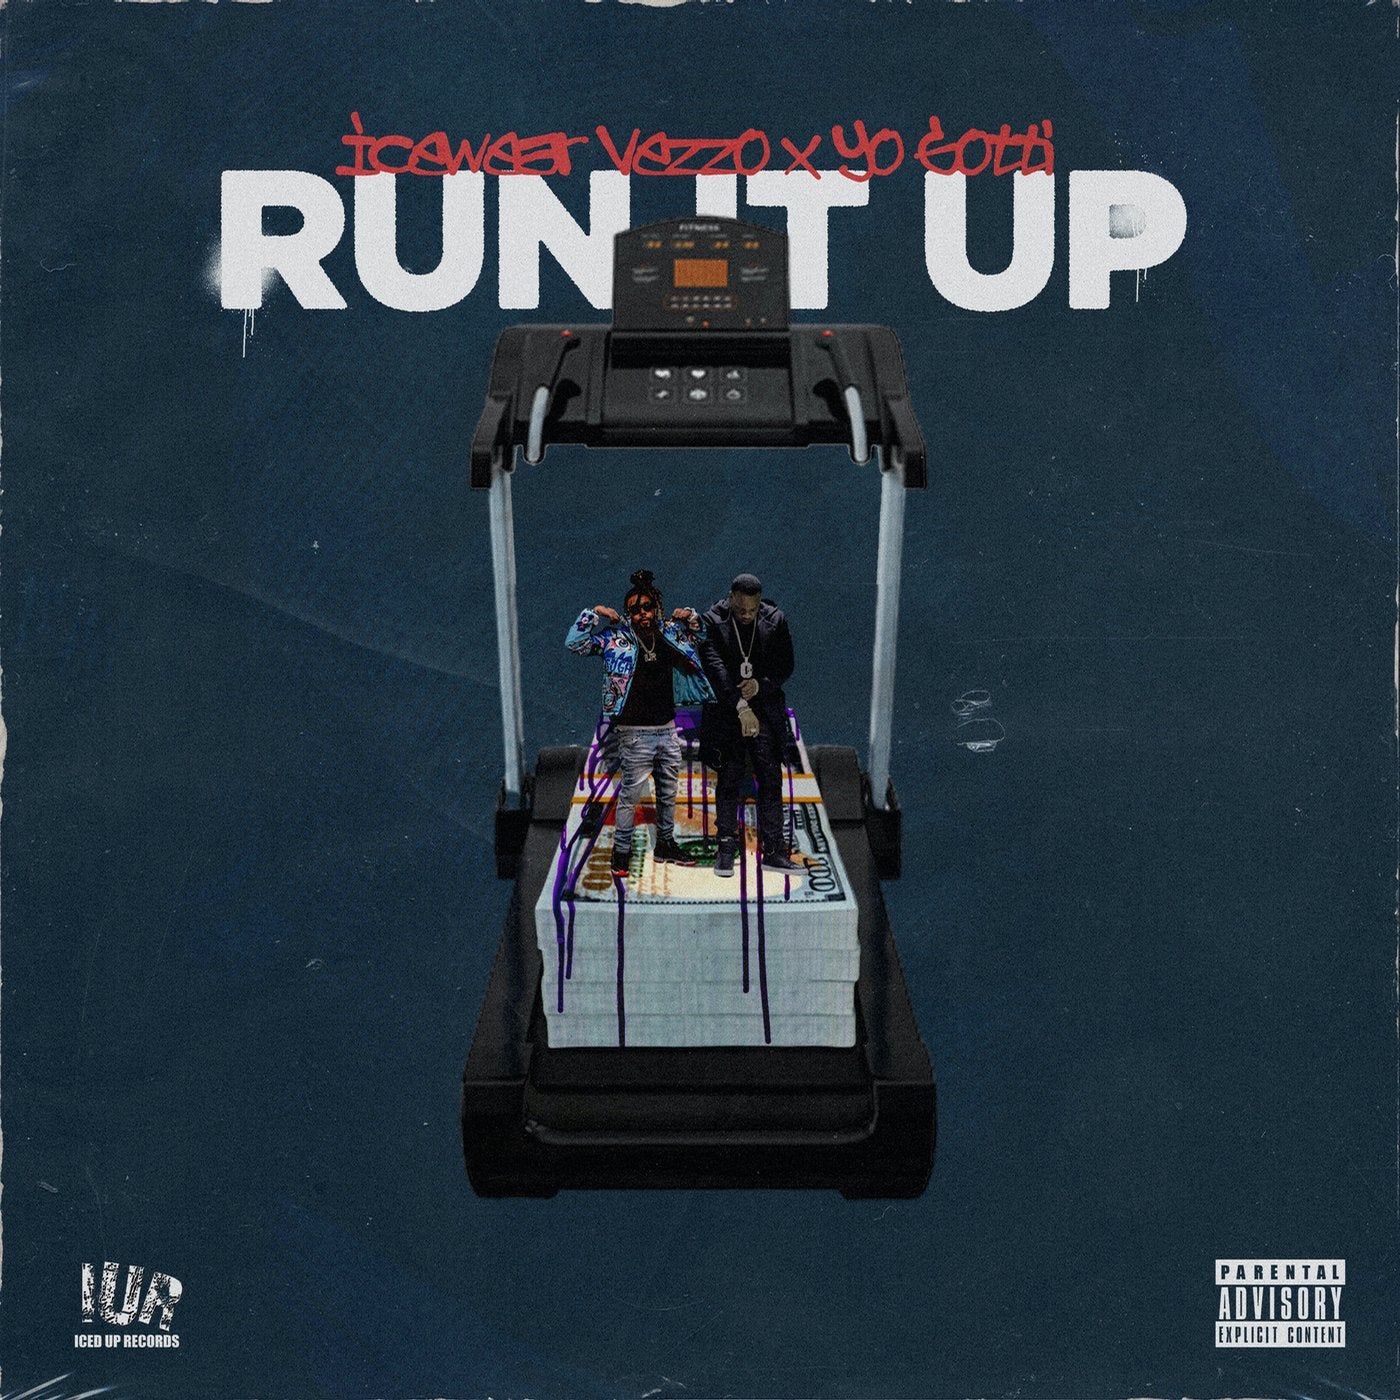 Run It Up (feat. Yo Gotti)